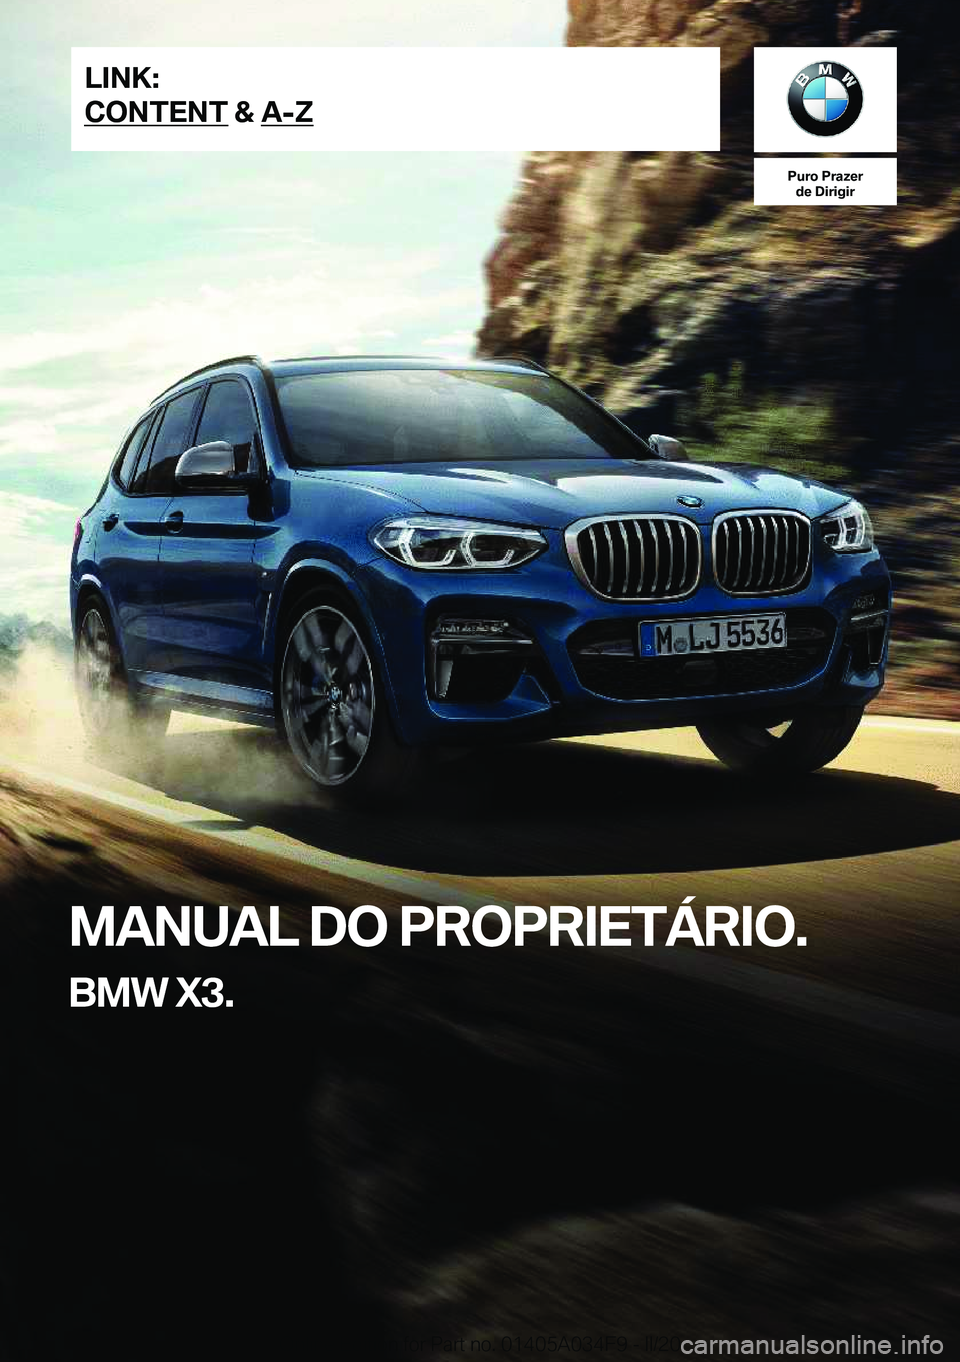 BMW X3 2020  Manual do condutor (in Portuguese) �P�u�r�o��P�r�a�z�e�r�d�e��D�i�r�i�g�i�r
�M�A�N�U�A�L��D�O��P�R�O�P�R�I�E�T�Á�R�I�O�.
�B�M�W��X�3�.�L�I�N�K�:
�C�O�N�T�E�N�T��&��A�-�Z�O�n�l�i�n�e��E�d�i�t�i�o�n��f�o�r��P�a�r�t��n�o�.��0